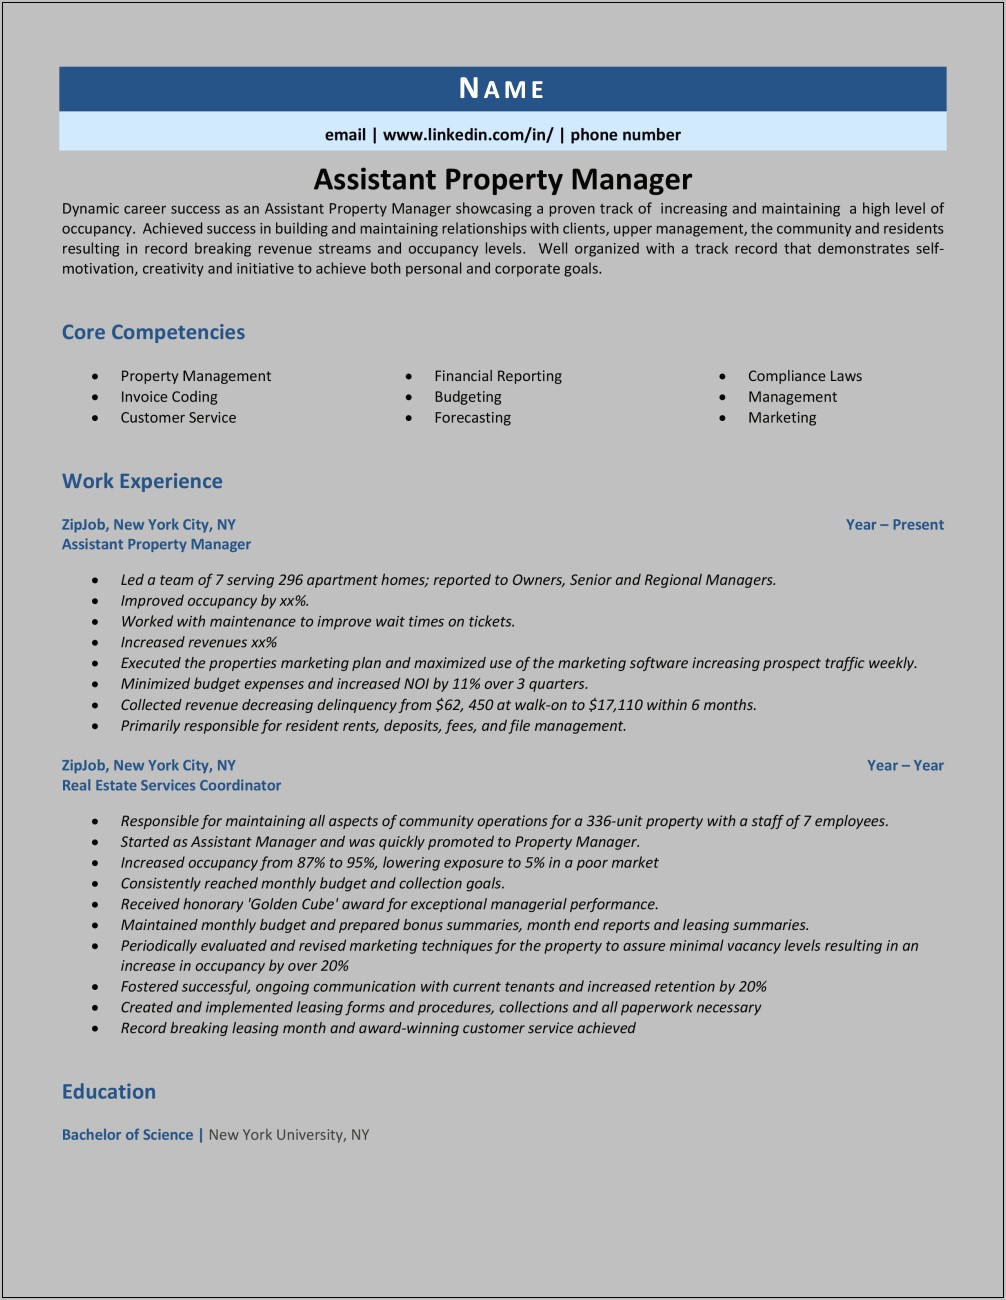 Property Management Resume For Assistant Manger